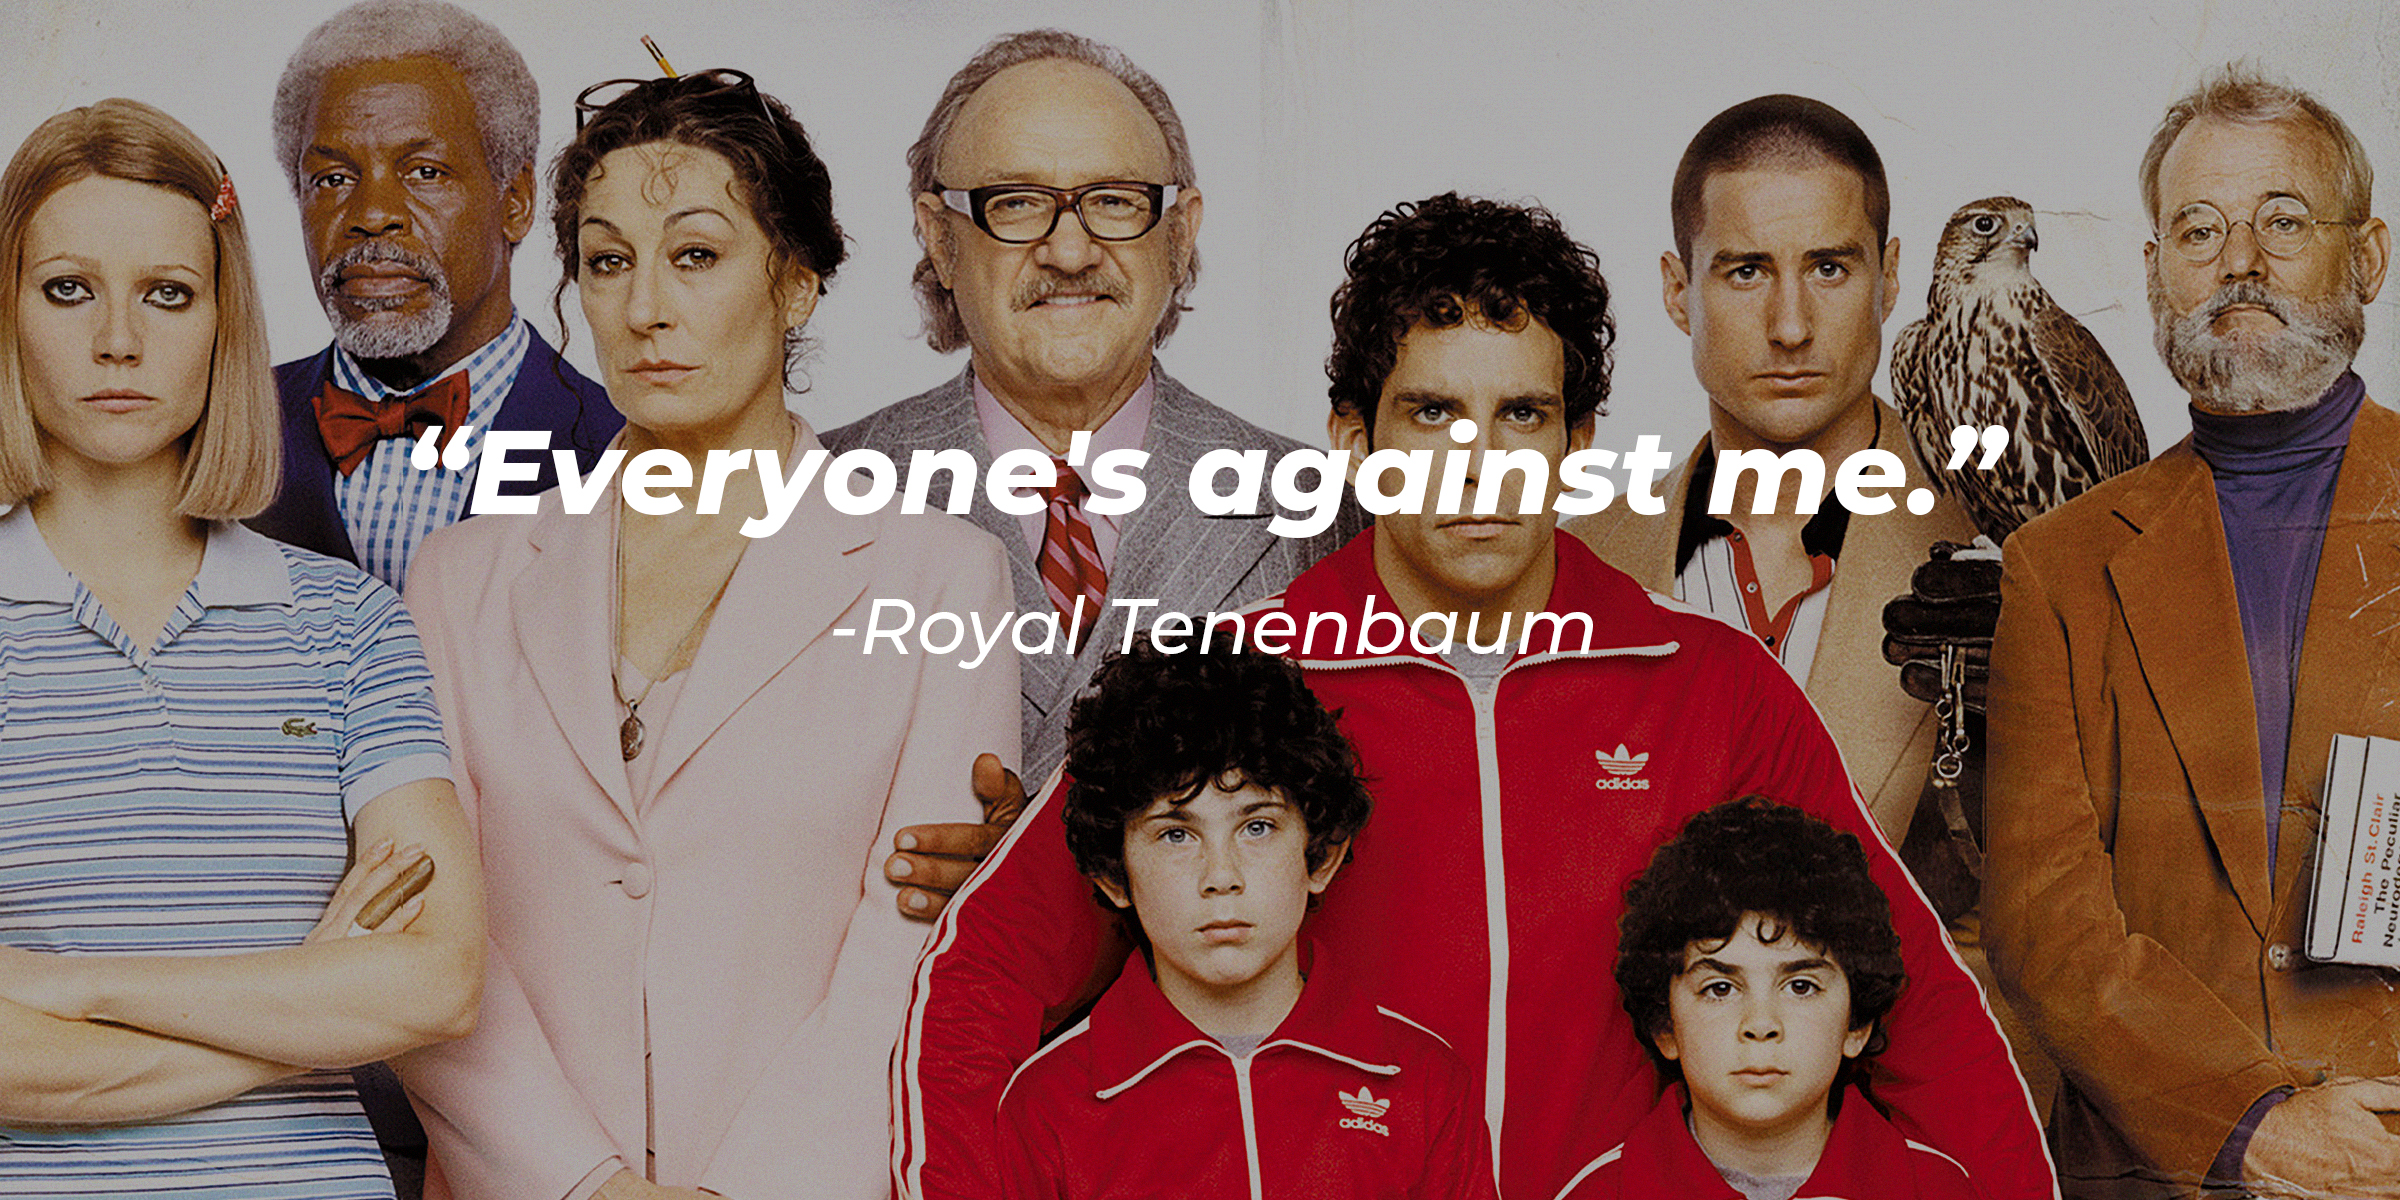 Source: Facebook.com/The Royal Tenenbaums | Cast of "The Royal Tenenbaums" with the quote: "Everyone's against me."